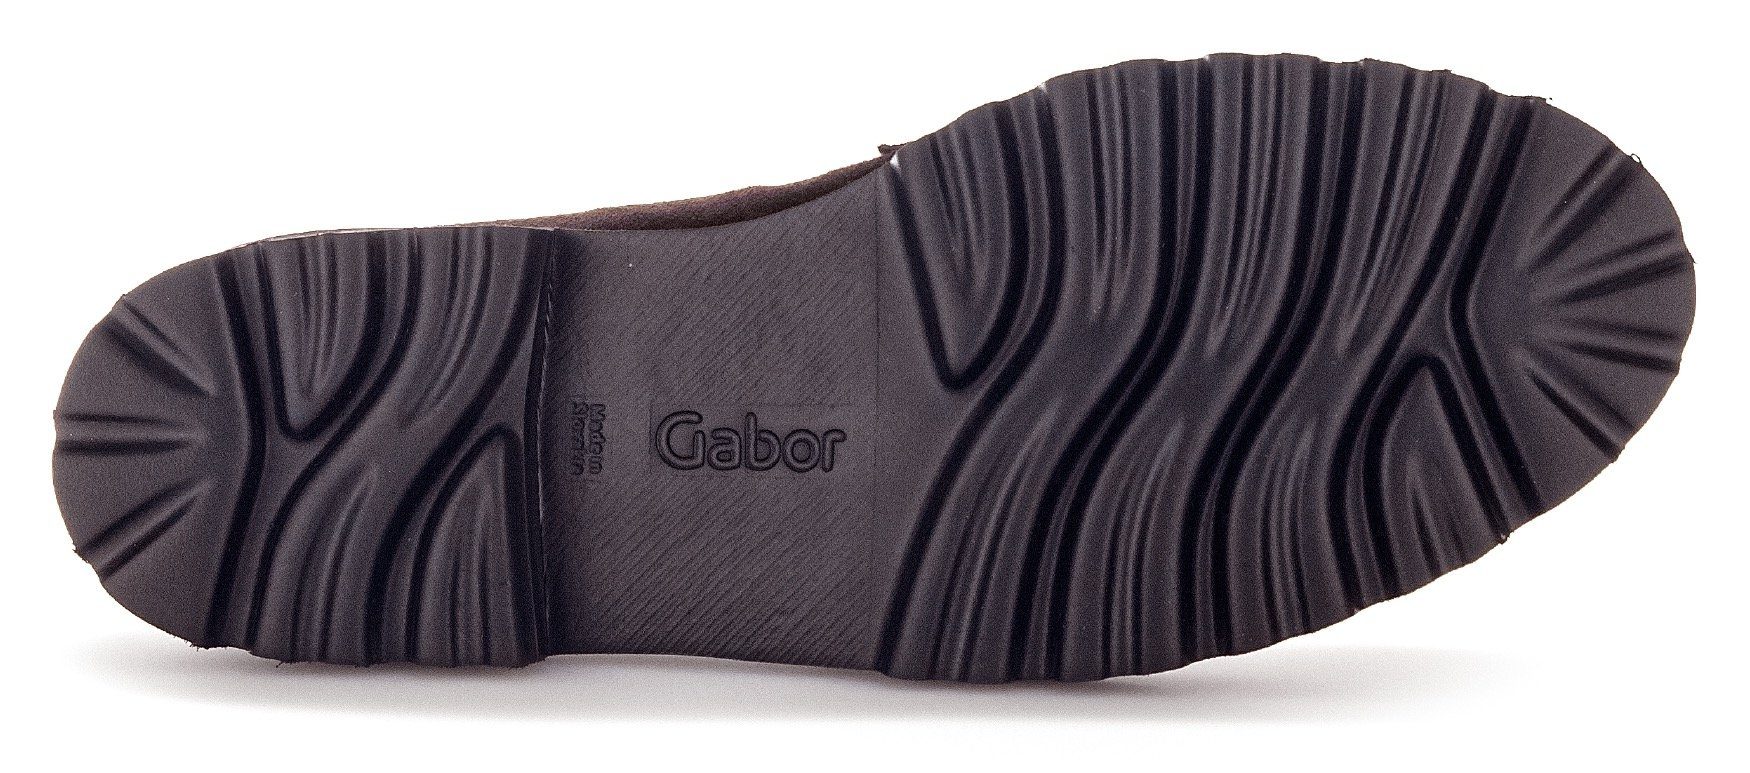 Gabor Slipper mit Best dunkelbraun-schwarz Fitting-Ausstattung